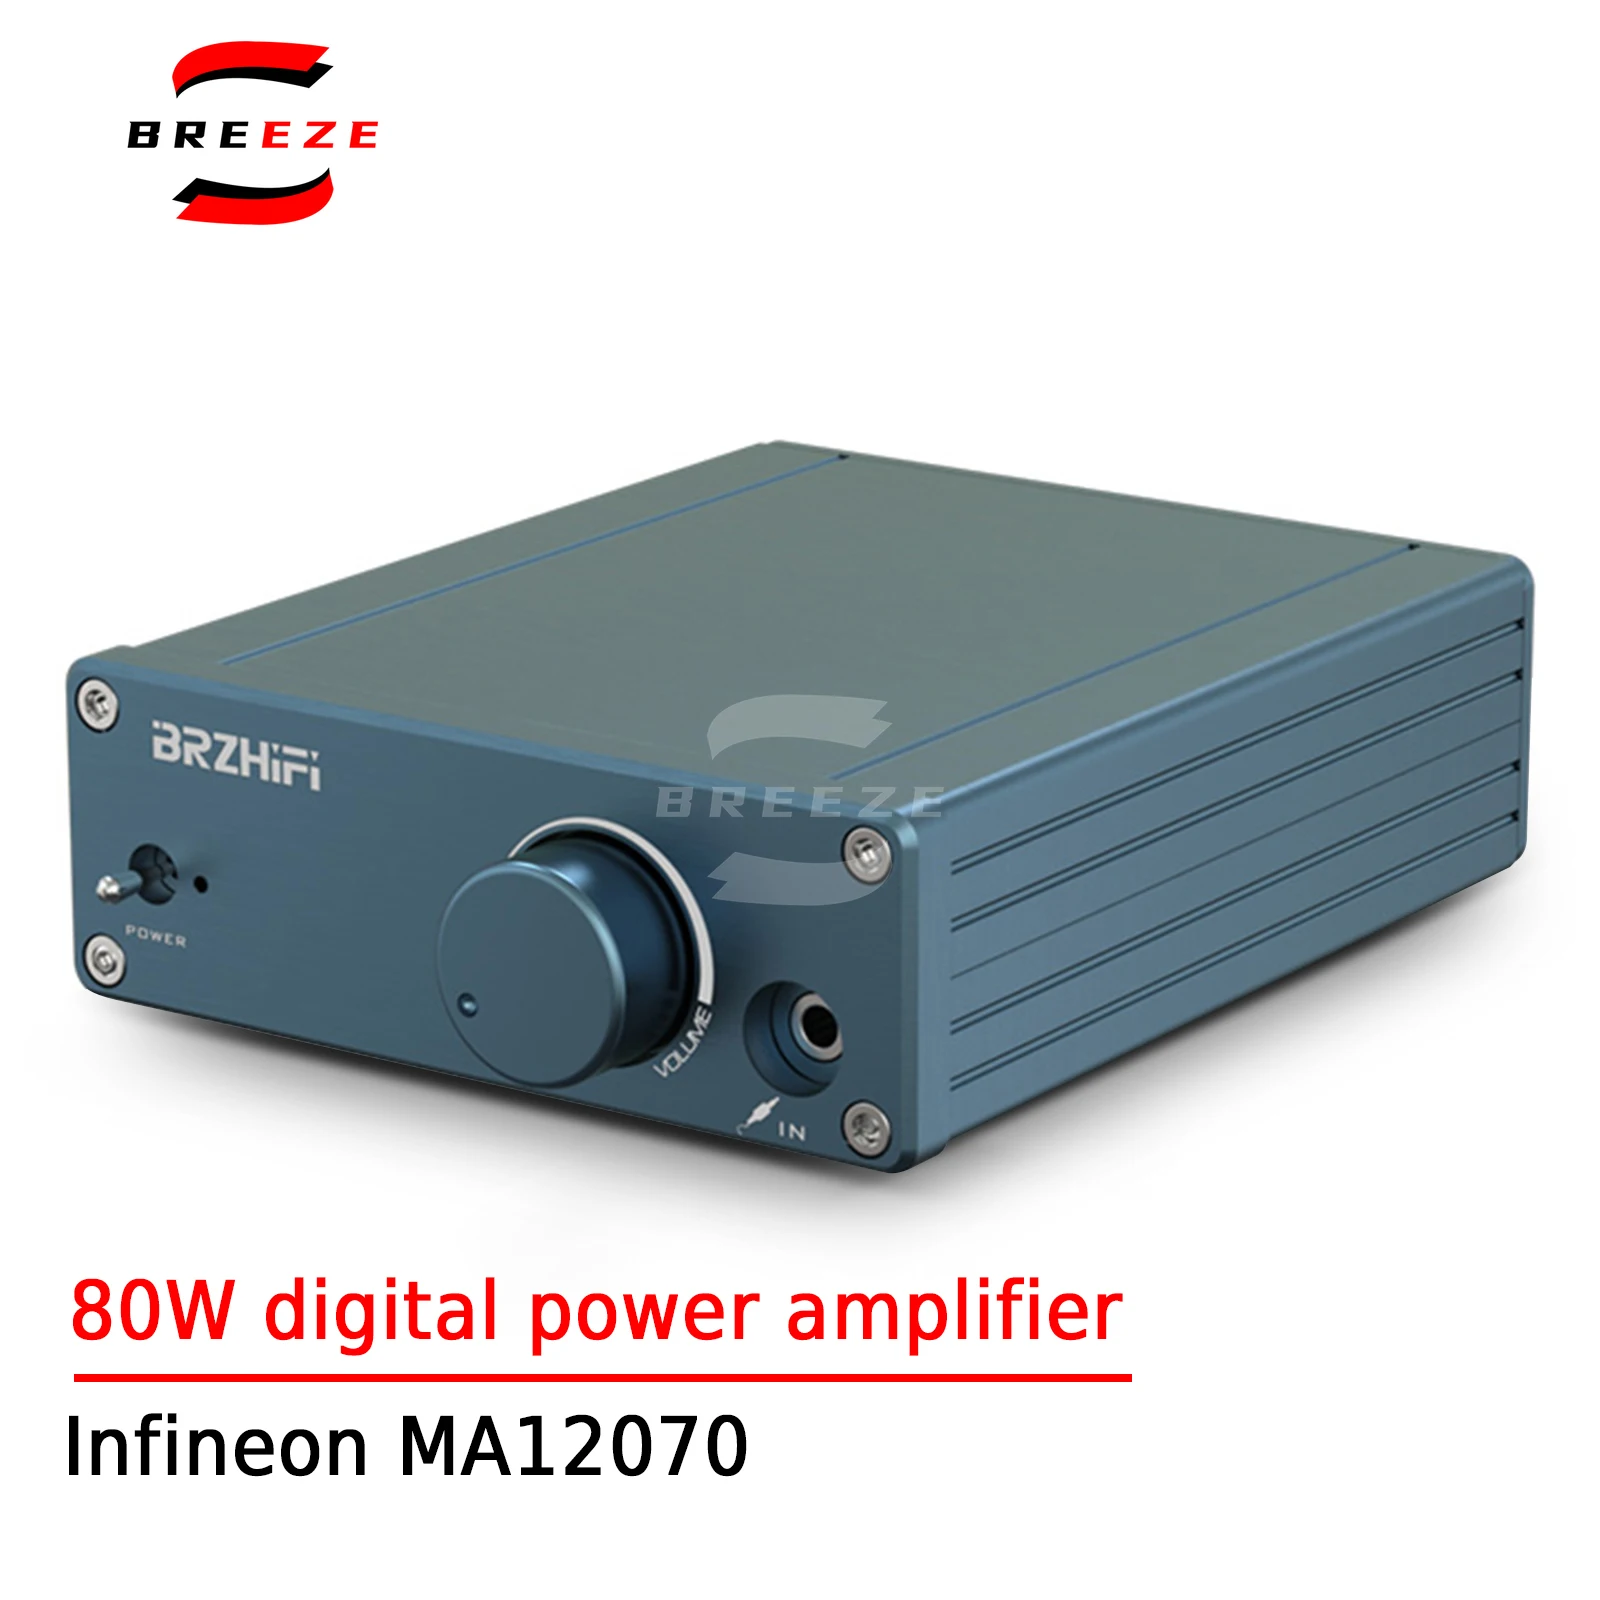 

BREEZE HIFI 80W Low-distortion Digital Amplifier Infineon MA12070 Ultra TPA3116 Audio Home Digital Amplifier